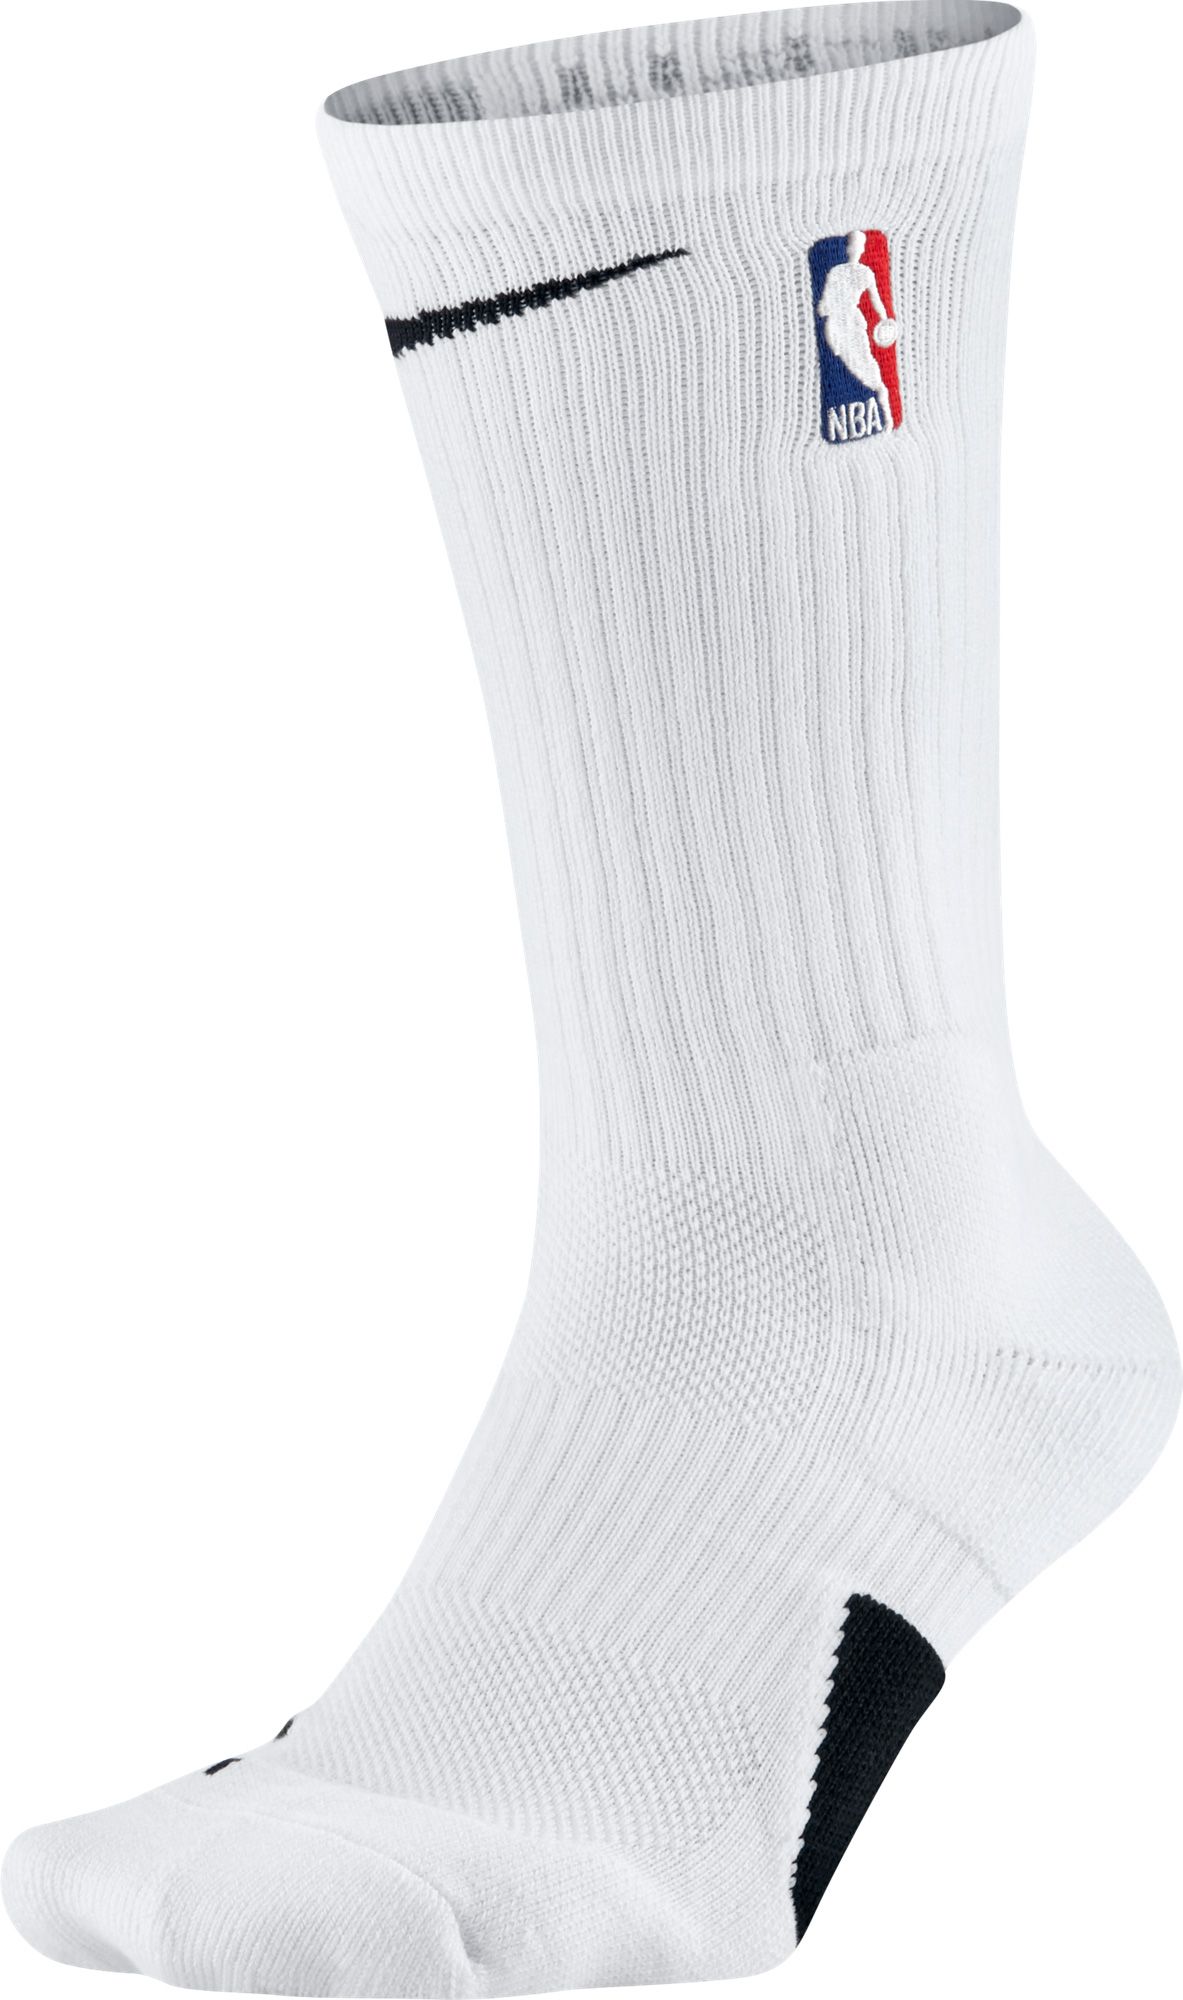 basketball socks white